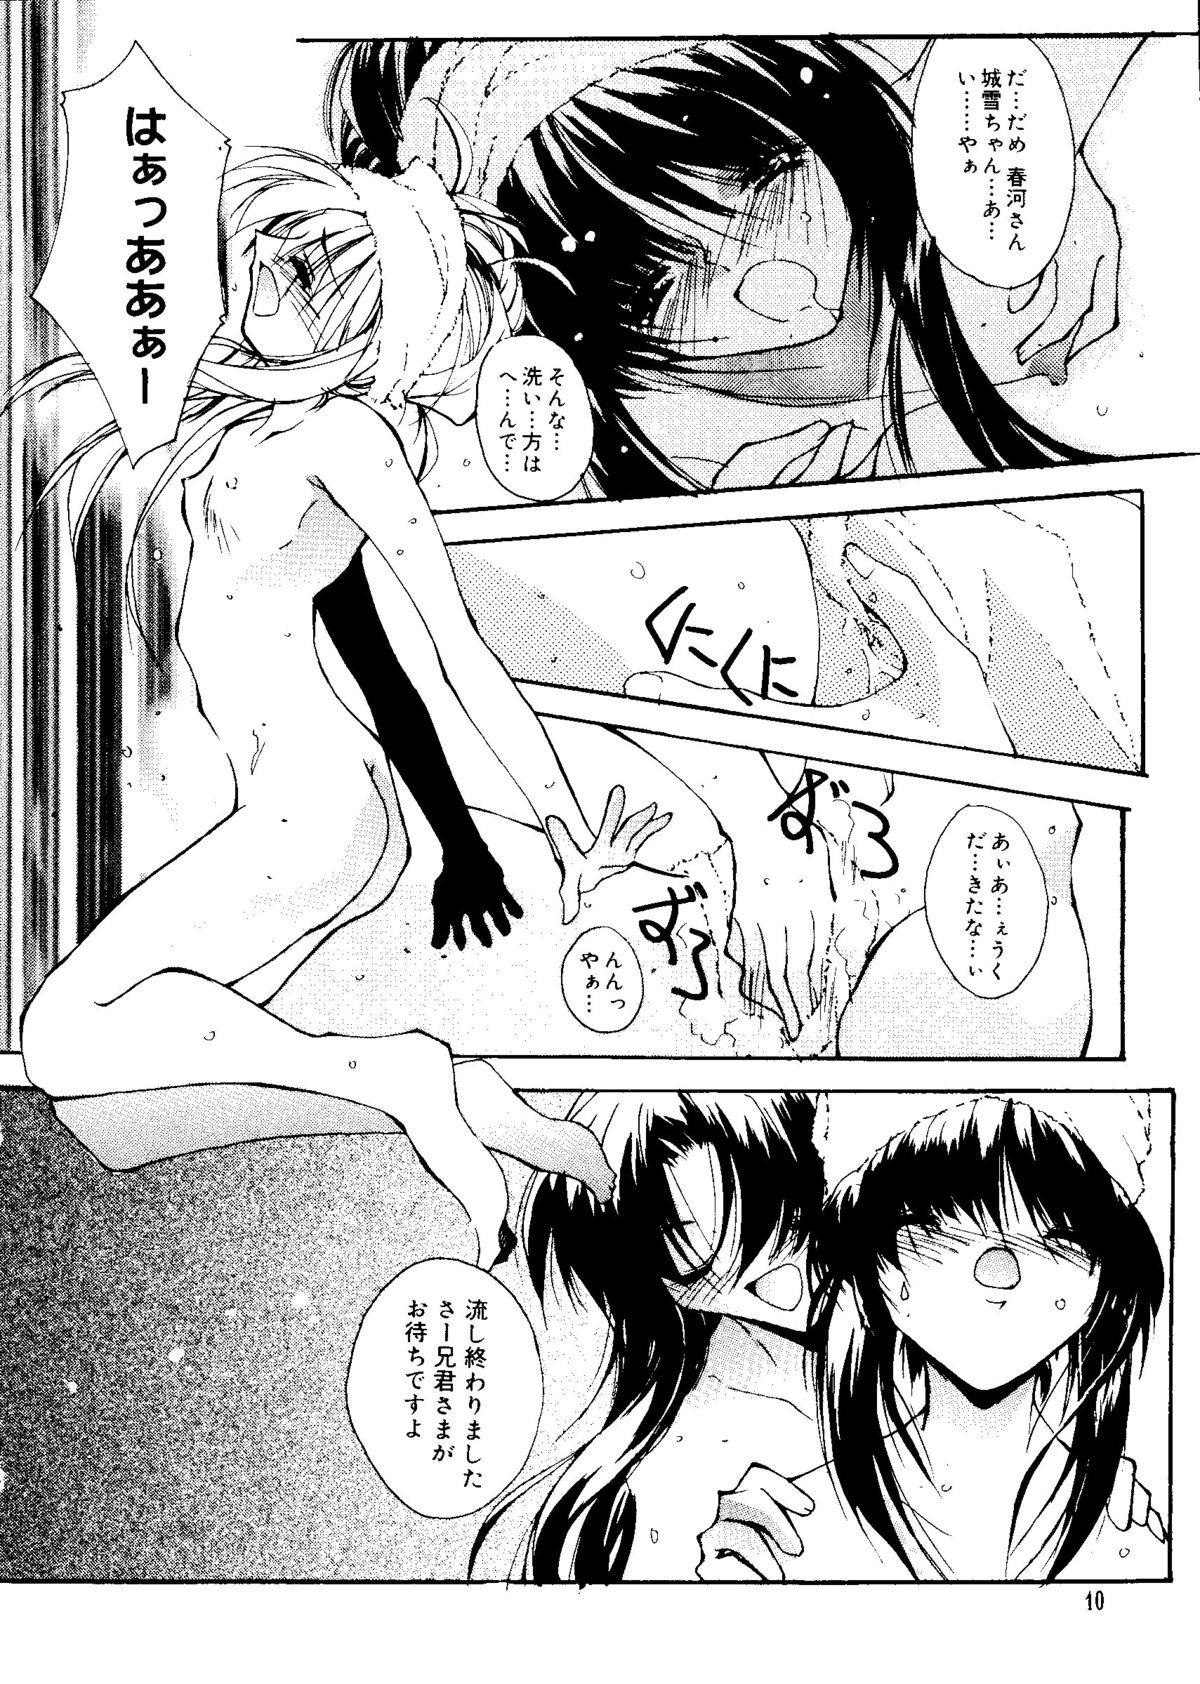 Big Booty Love Chara Taizen No. 15 - Cardcaptor sakura Ojamajo doremi Chobits Angelic layer Mahoromatic Tenshi ni narumon Soloboy - Page 10